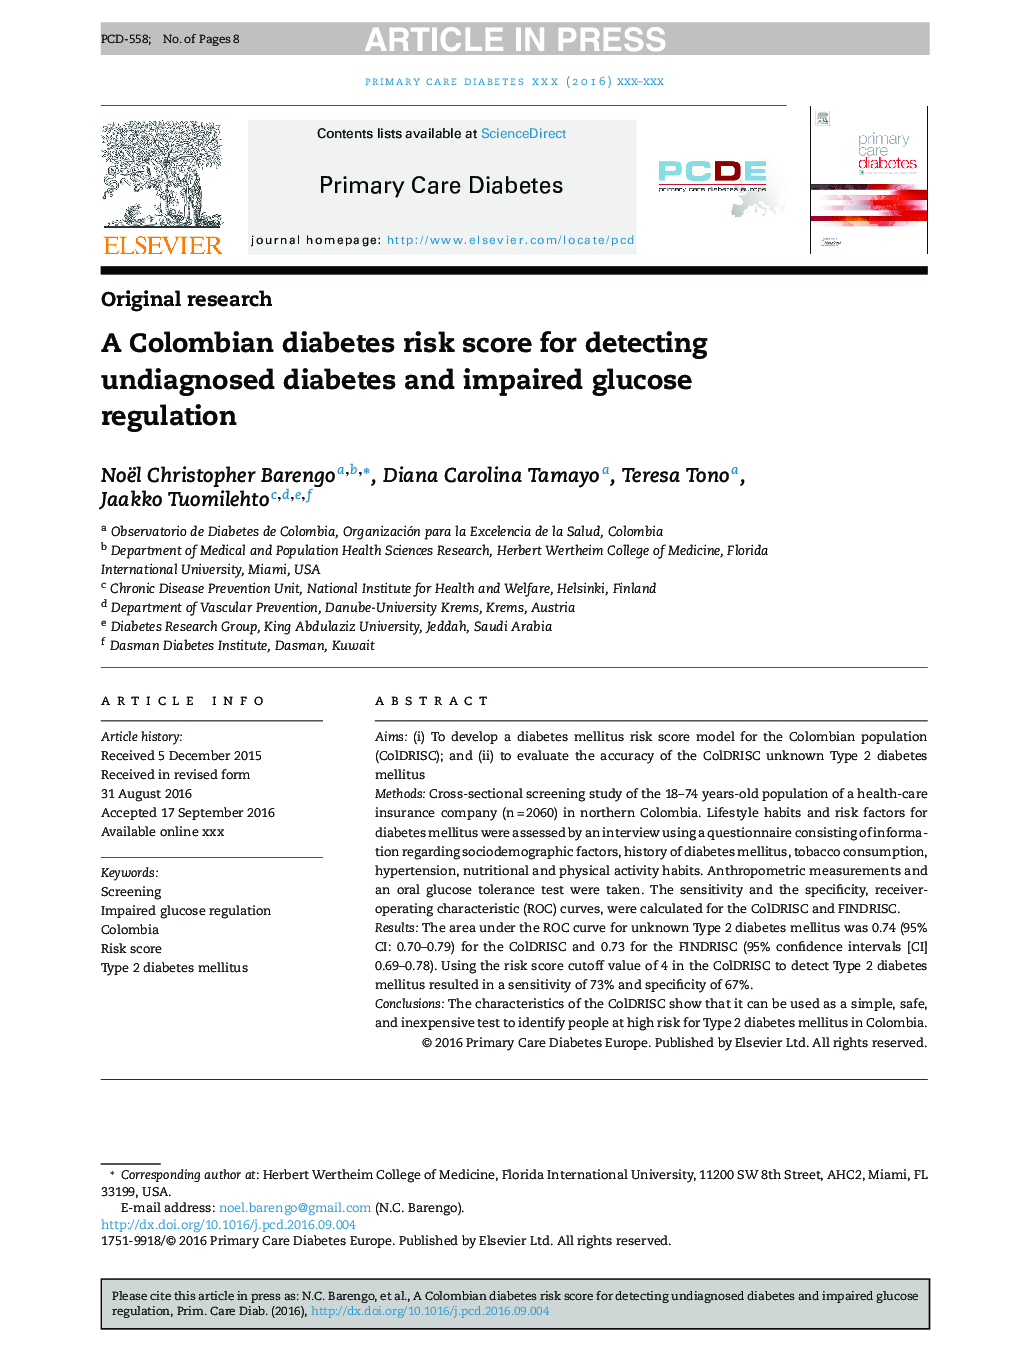 نمره ریسک ابتلا به دیابت کلمبیا برای تشخیص دیابت تشخیص داده شده و اختلال در تنظیم قند خون 